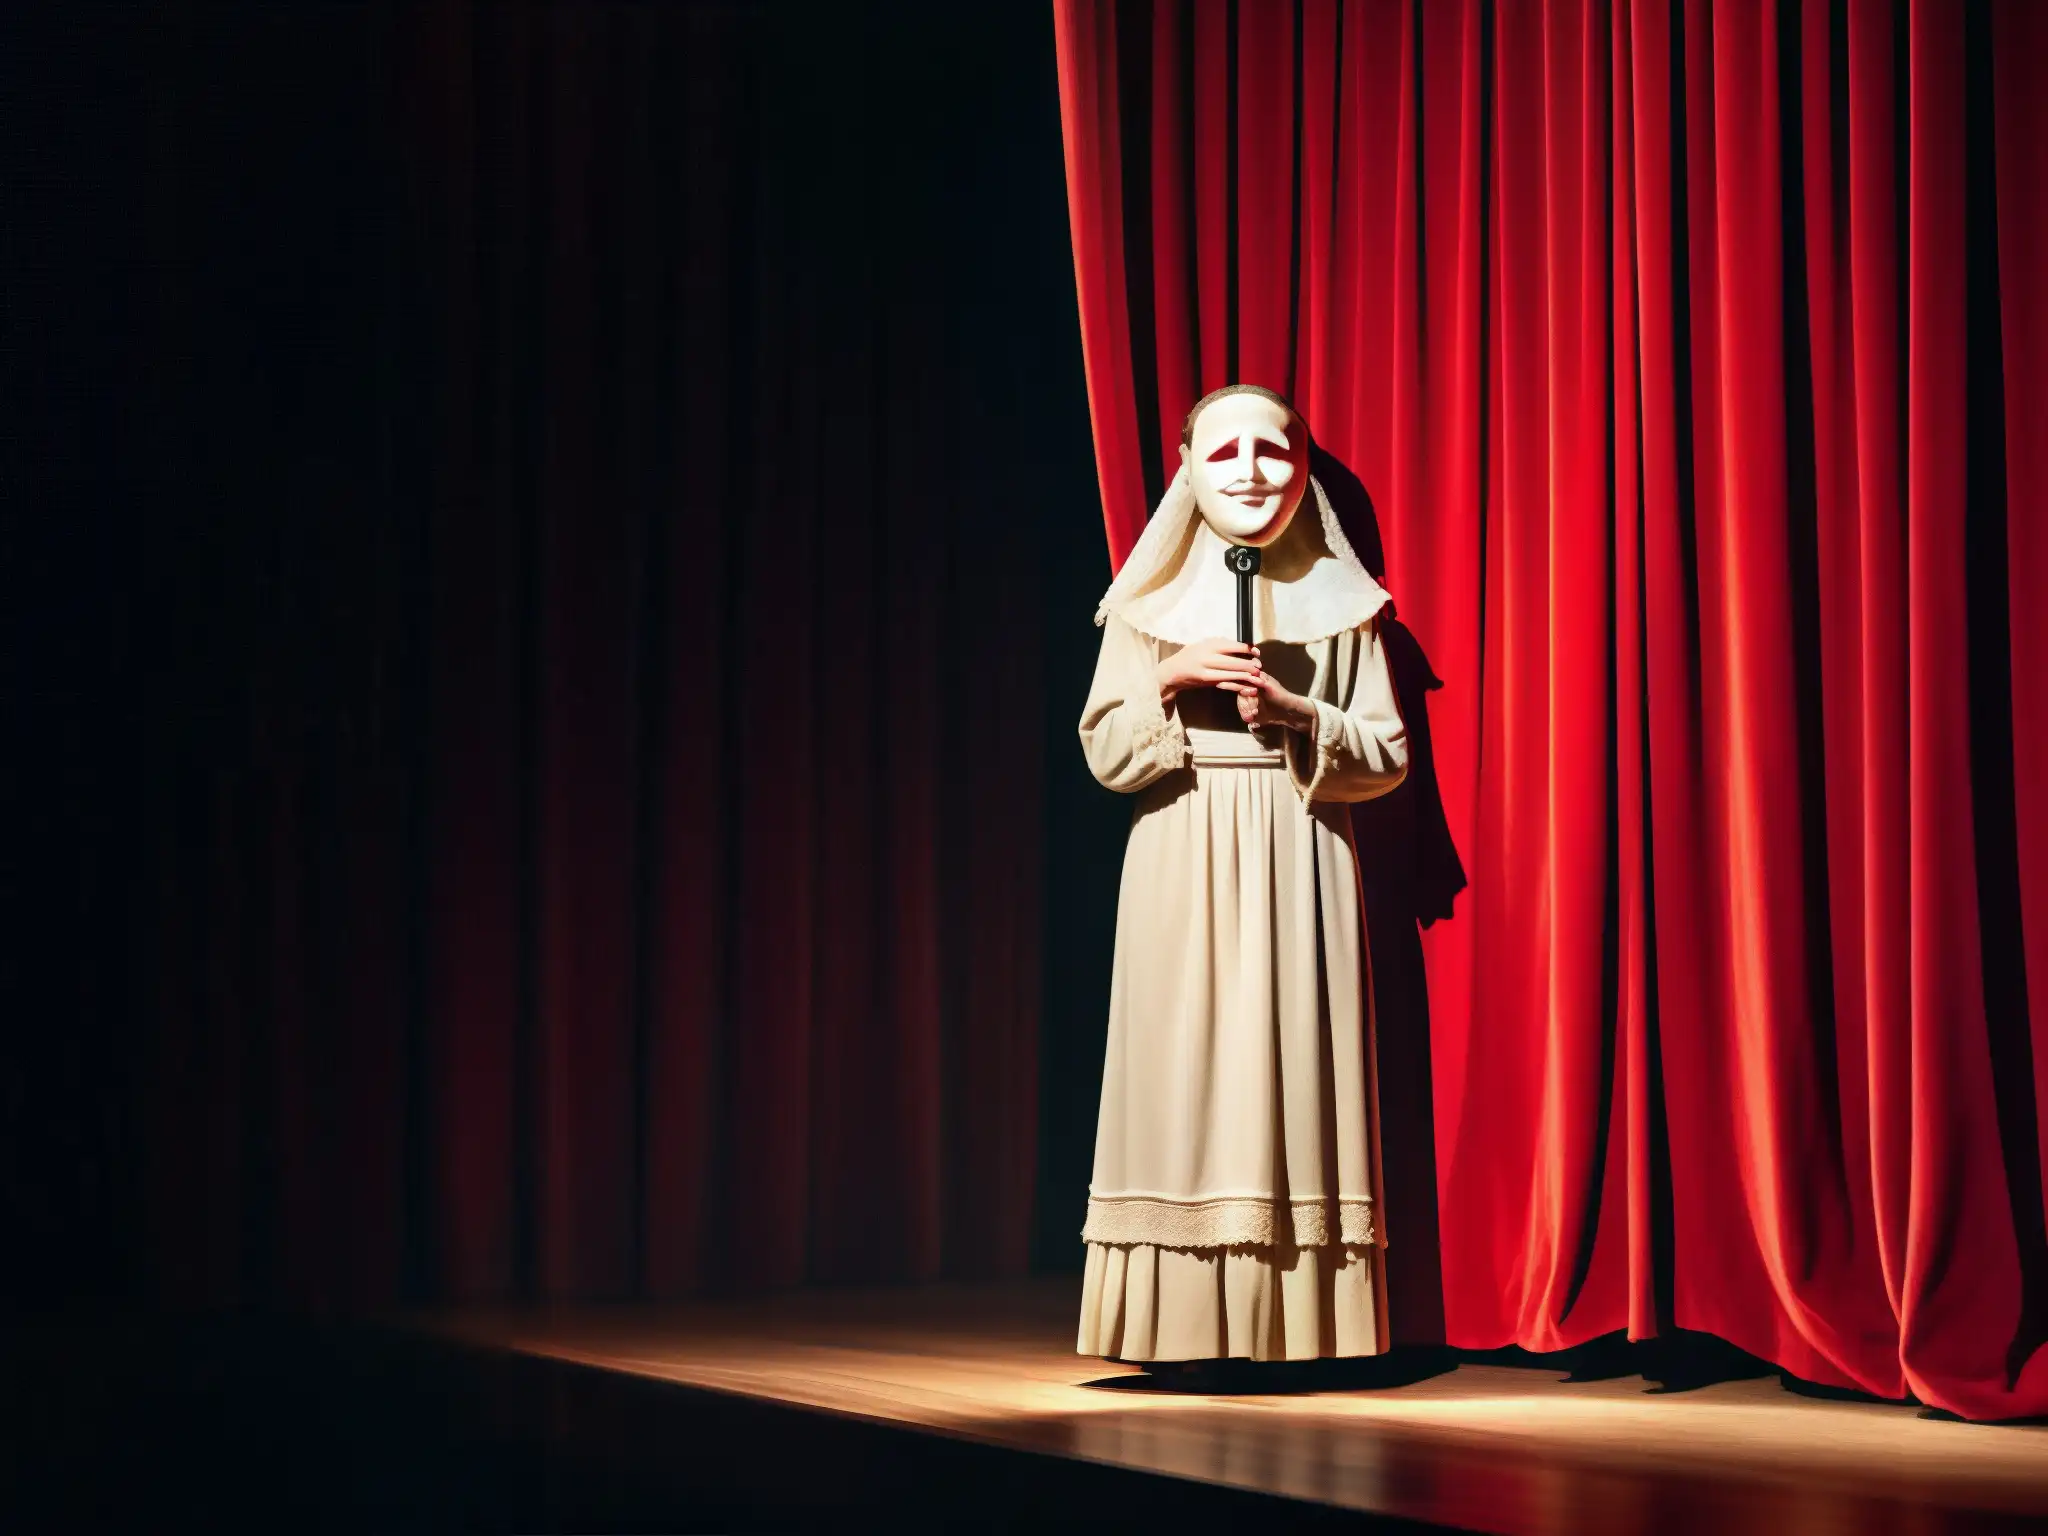 Fantasma teatral en escenario oscuro con cortina roja y máscara de porcelana, evocando atmósfera misteriosa y teatral